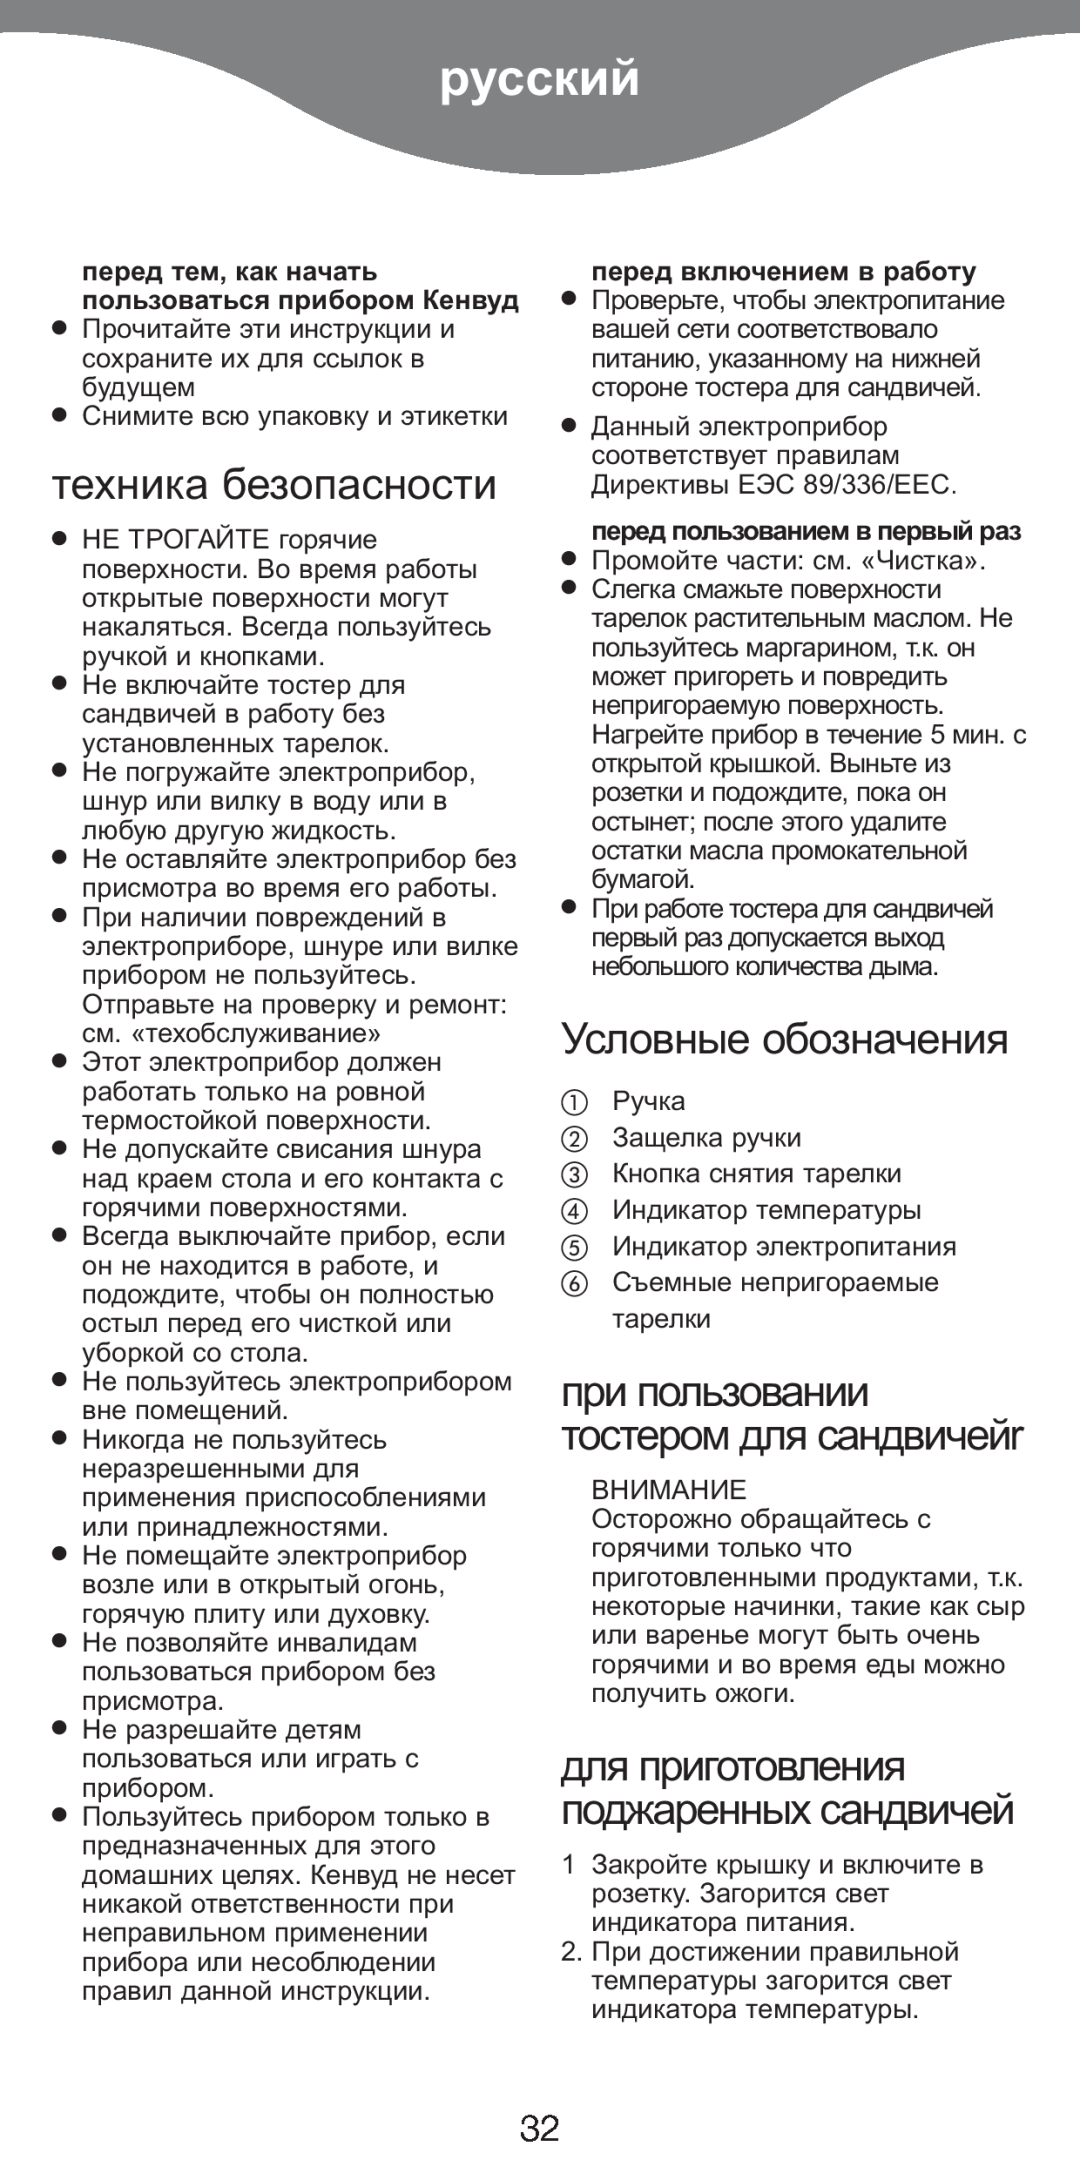 Kenwood SM420 manual русский, техника безопасности, Условные обозначения, для приготовления поджаренных сандвичей 